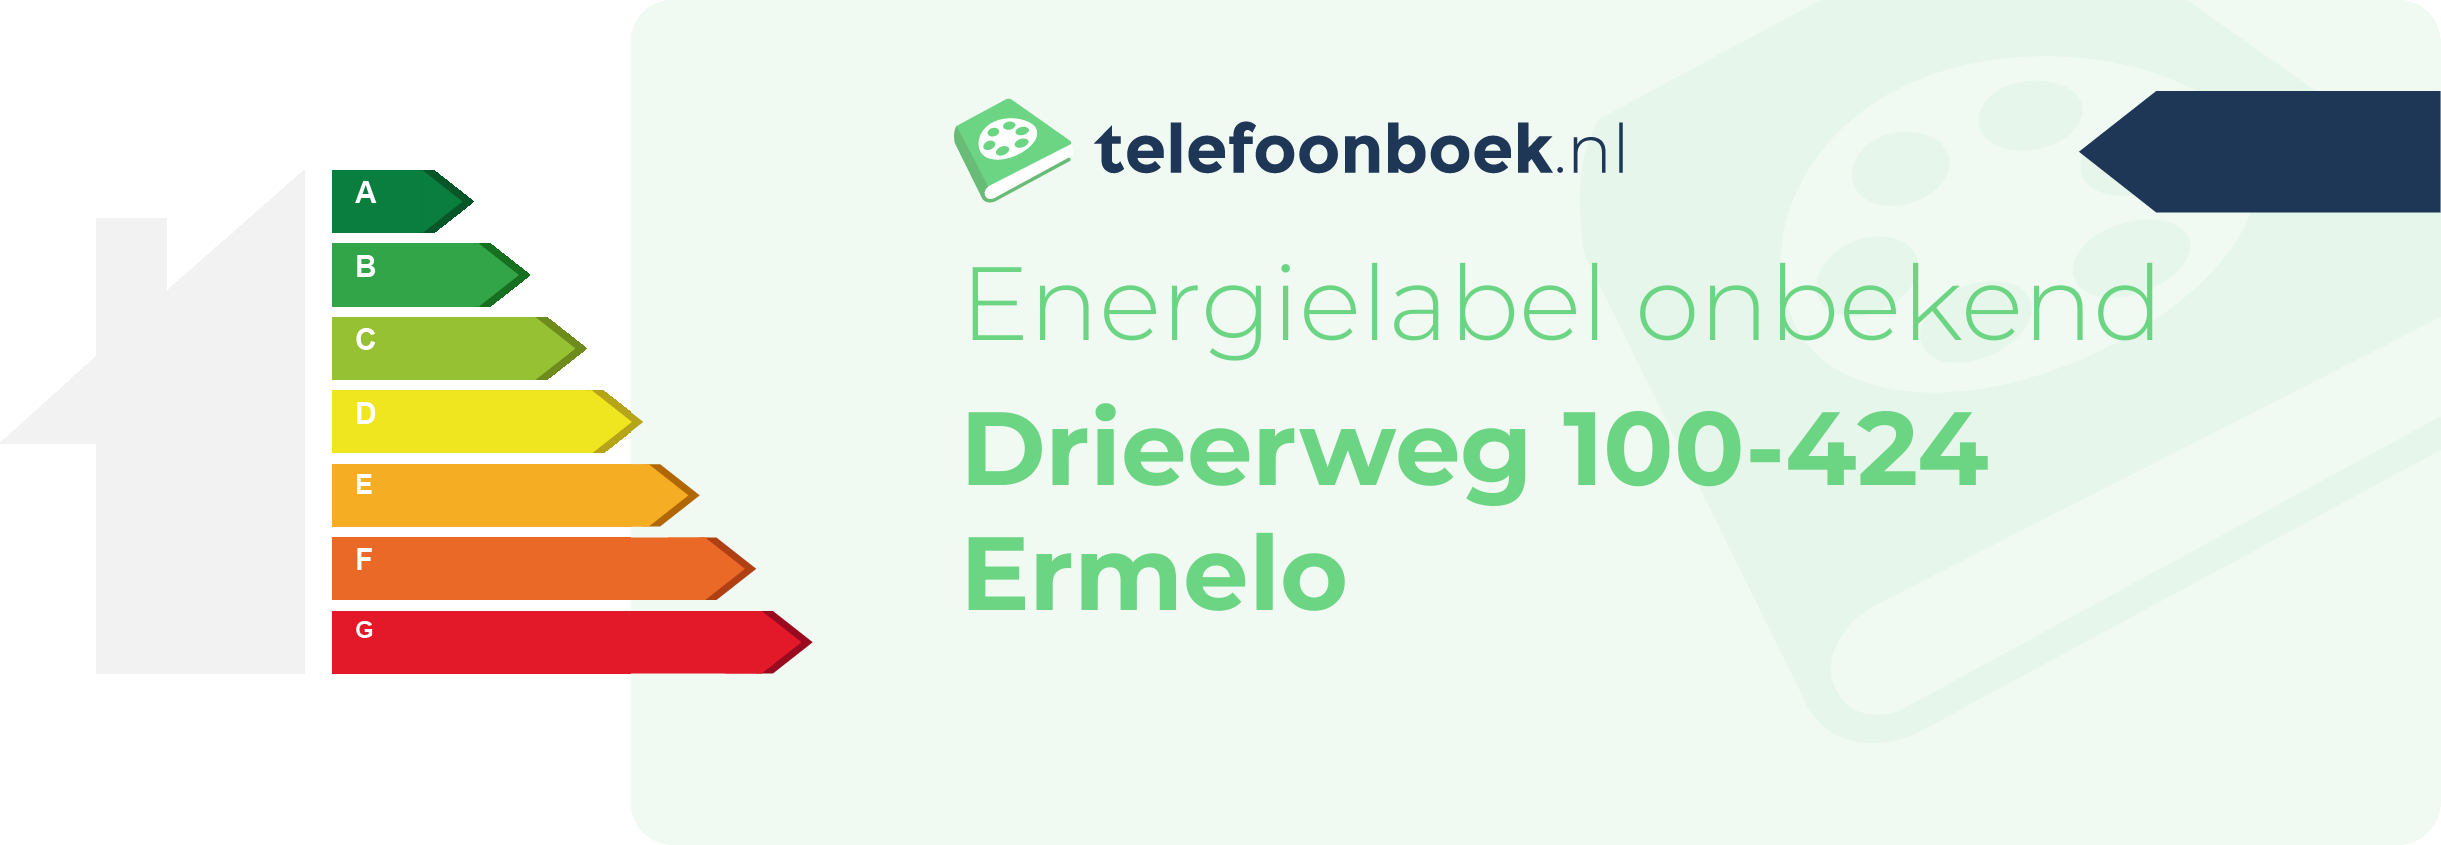 Energielabel Drieerweg 100-424 Ermelo